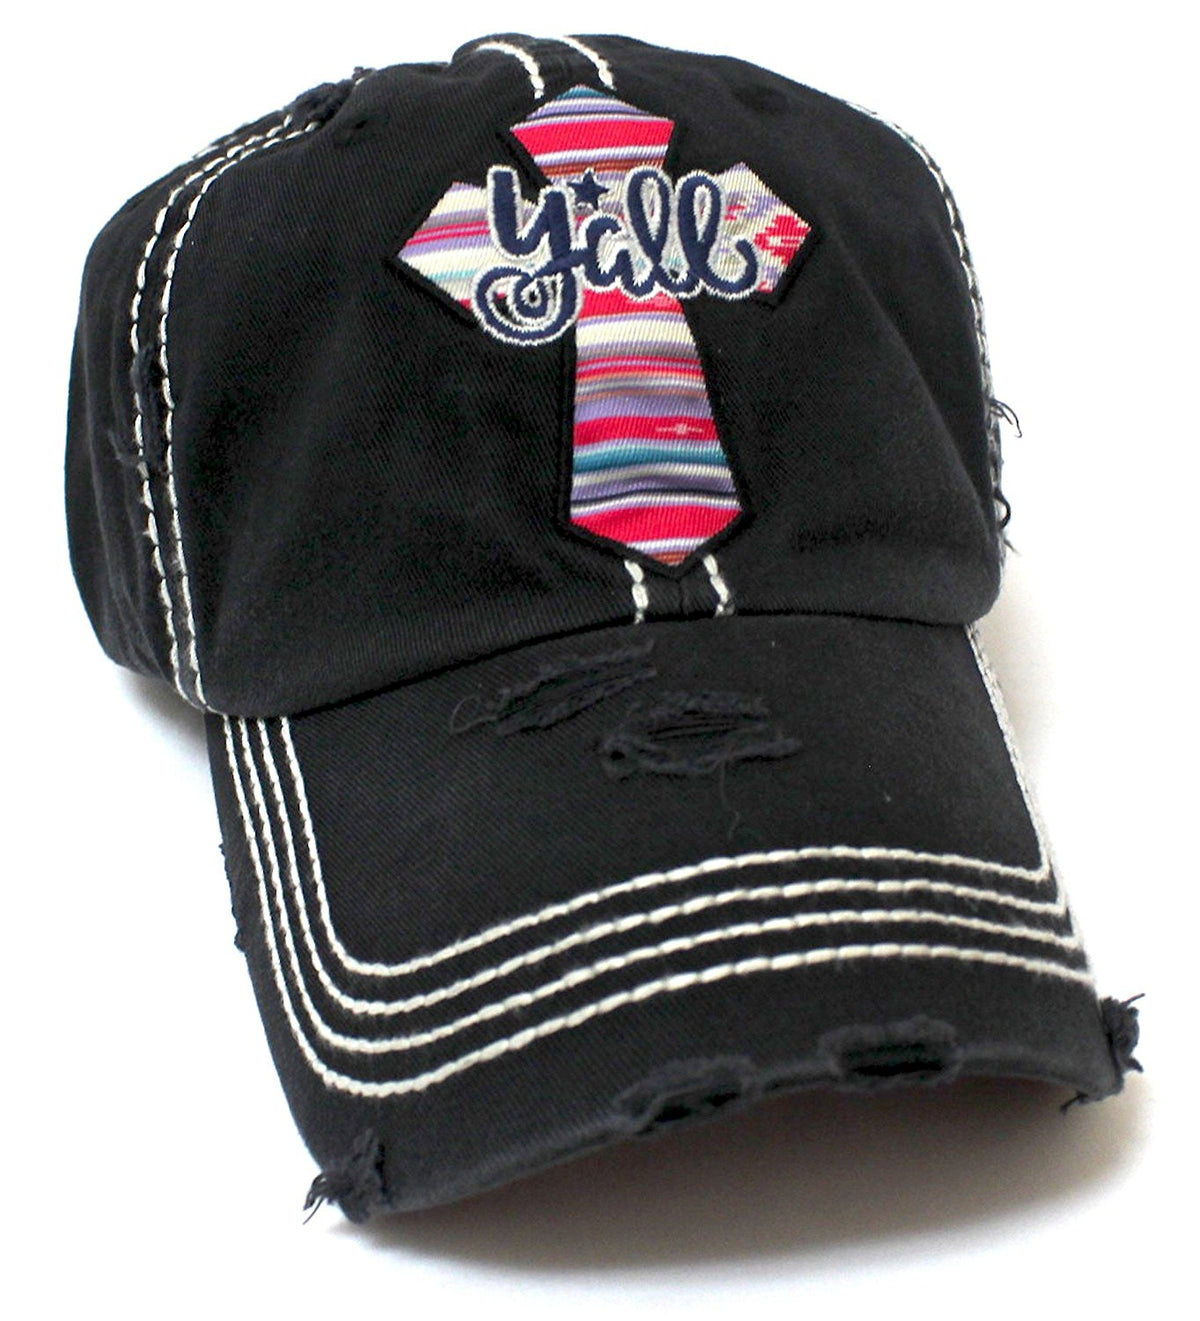 CAPS 'N VINTAGE Serape Y'all Cross Embroidery Hat - Caps 'N Vintage 